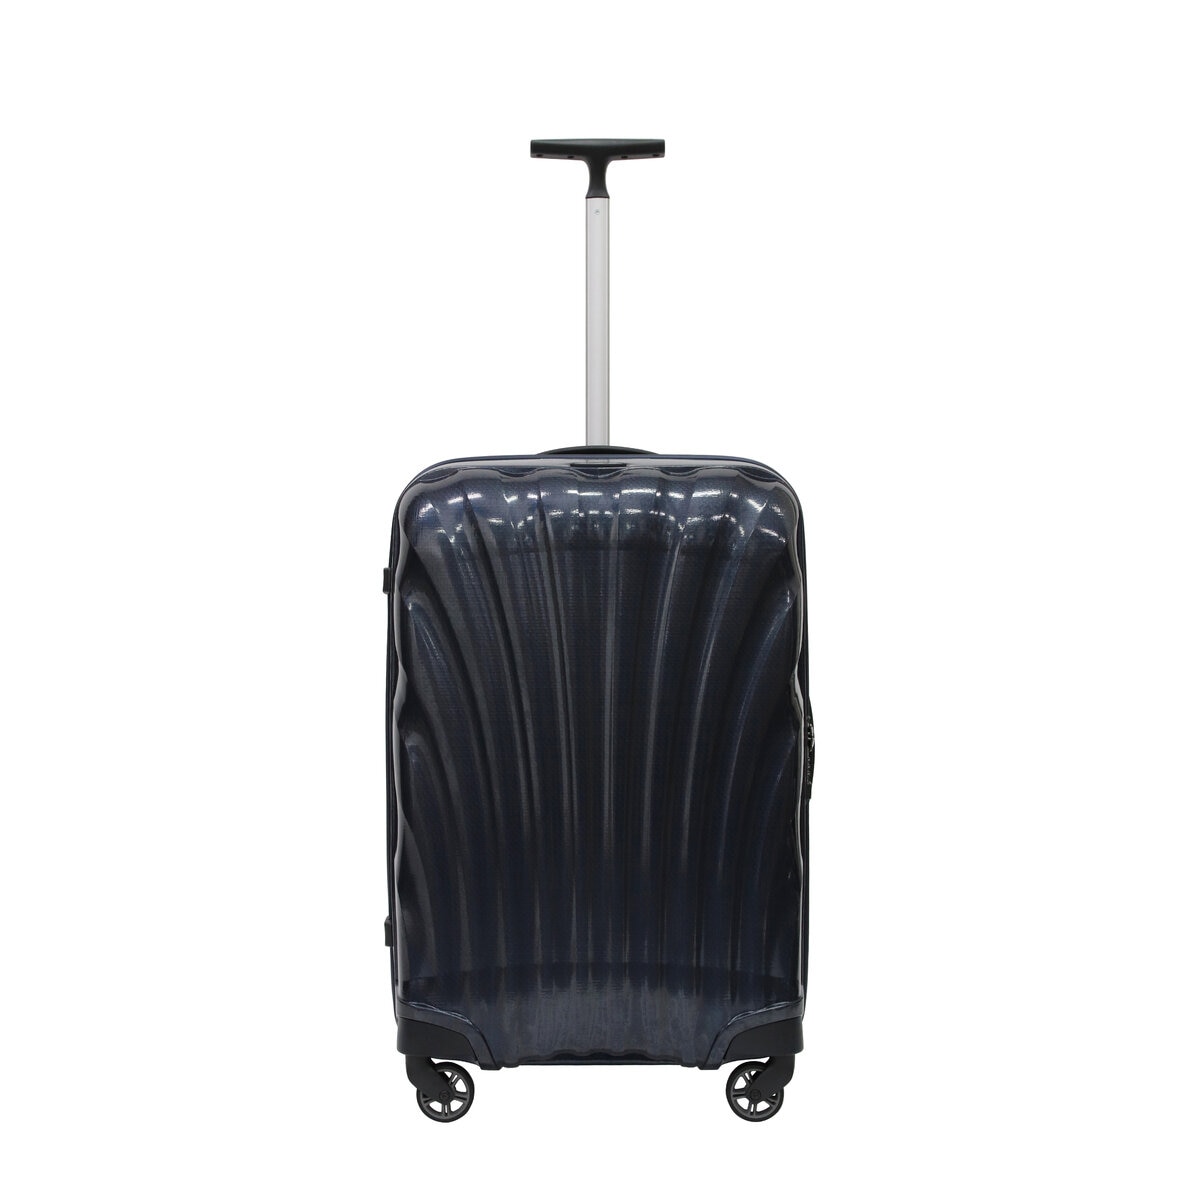 サムソナイト スーツケース コスモライト 3.0 69cm 73350